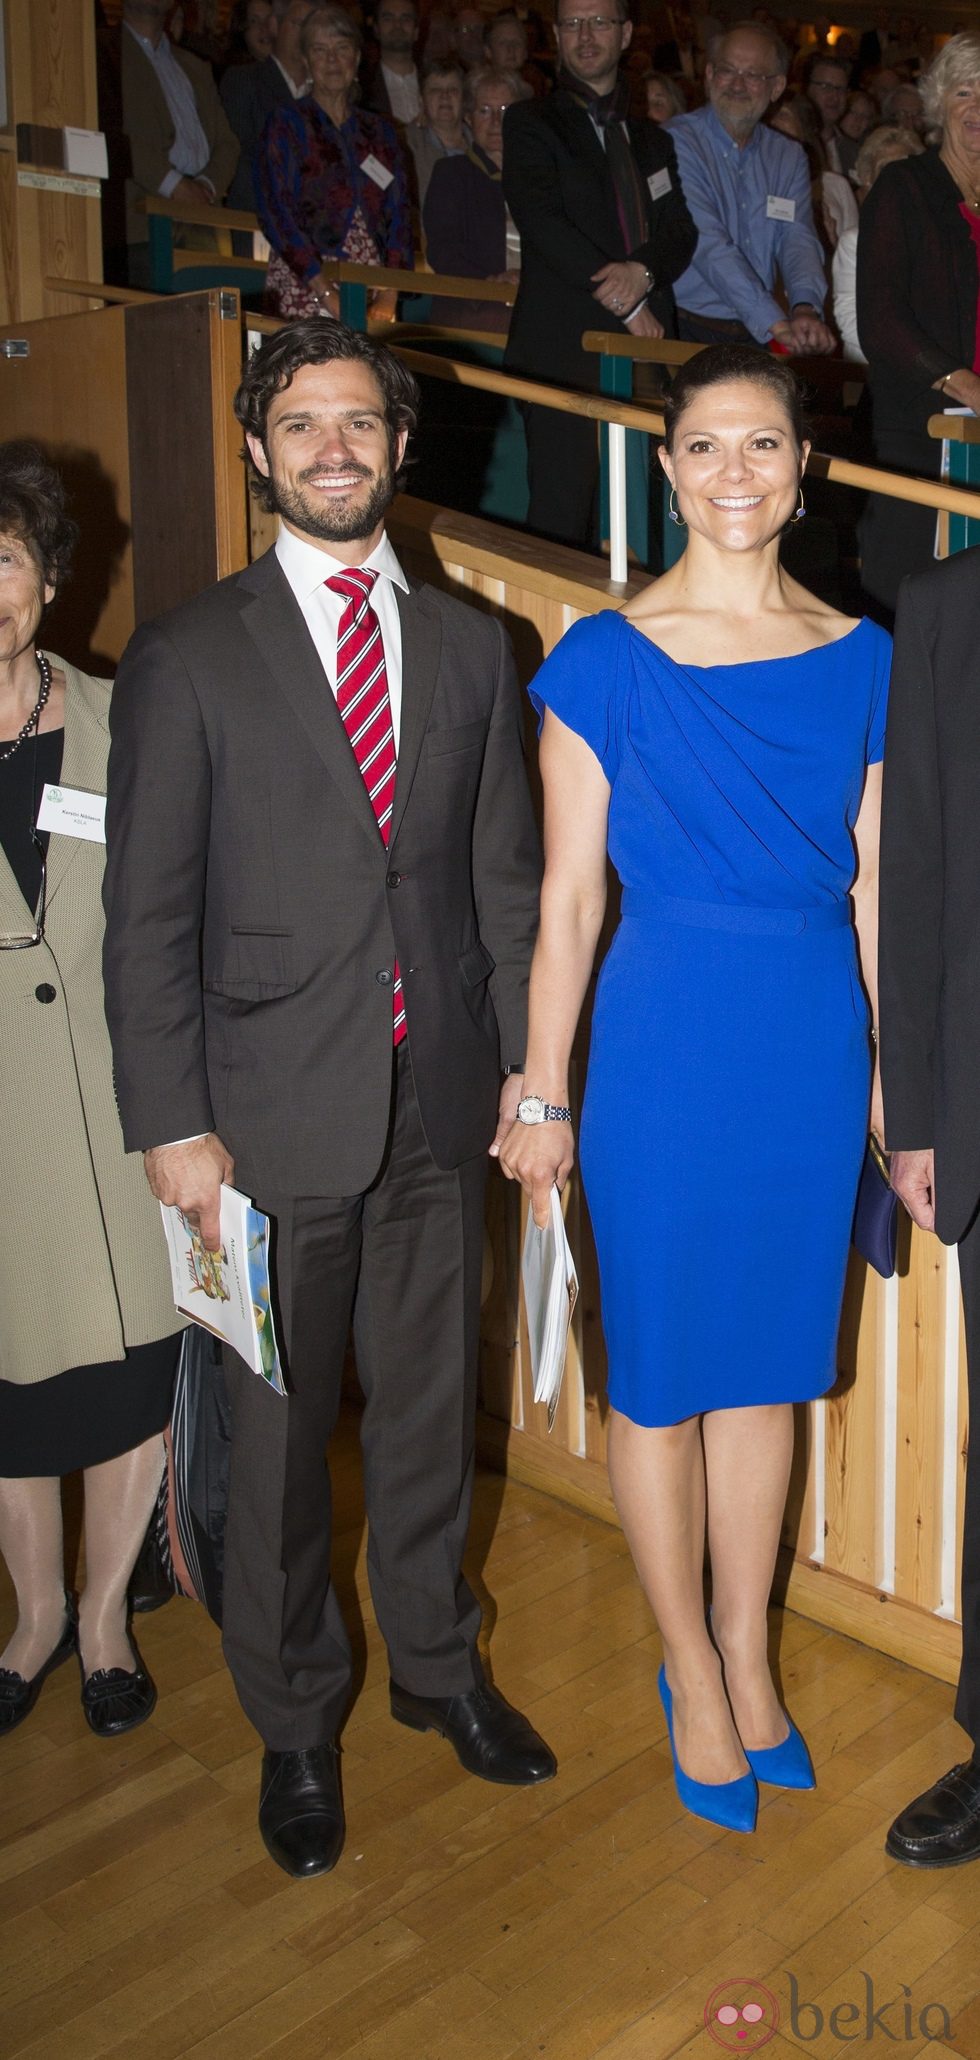 Carlos Felipe de Suecia y la Princesa Victoria en una conferencia en Estocolmo